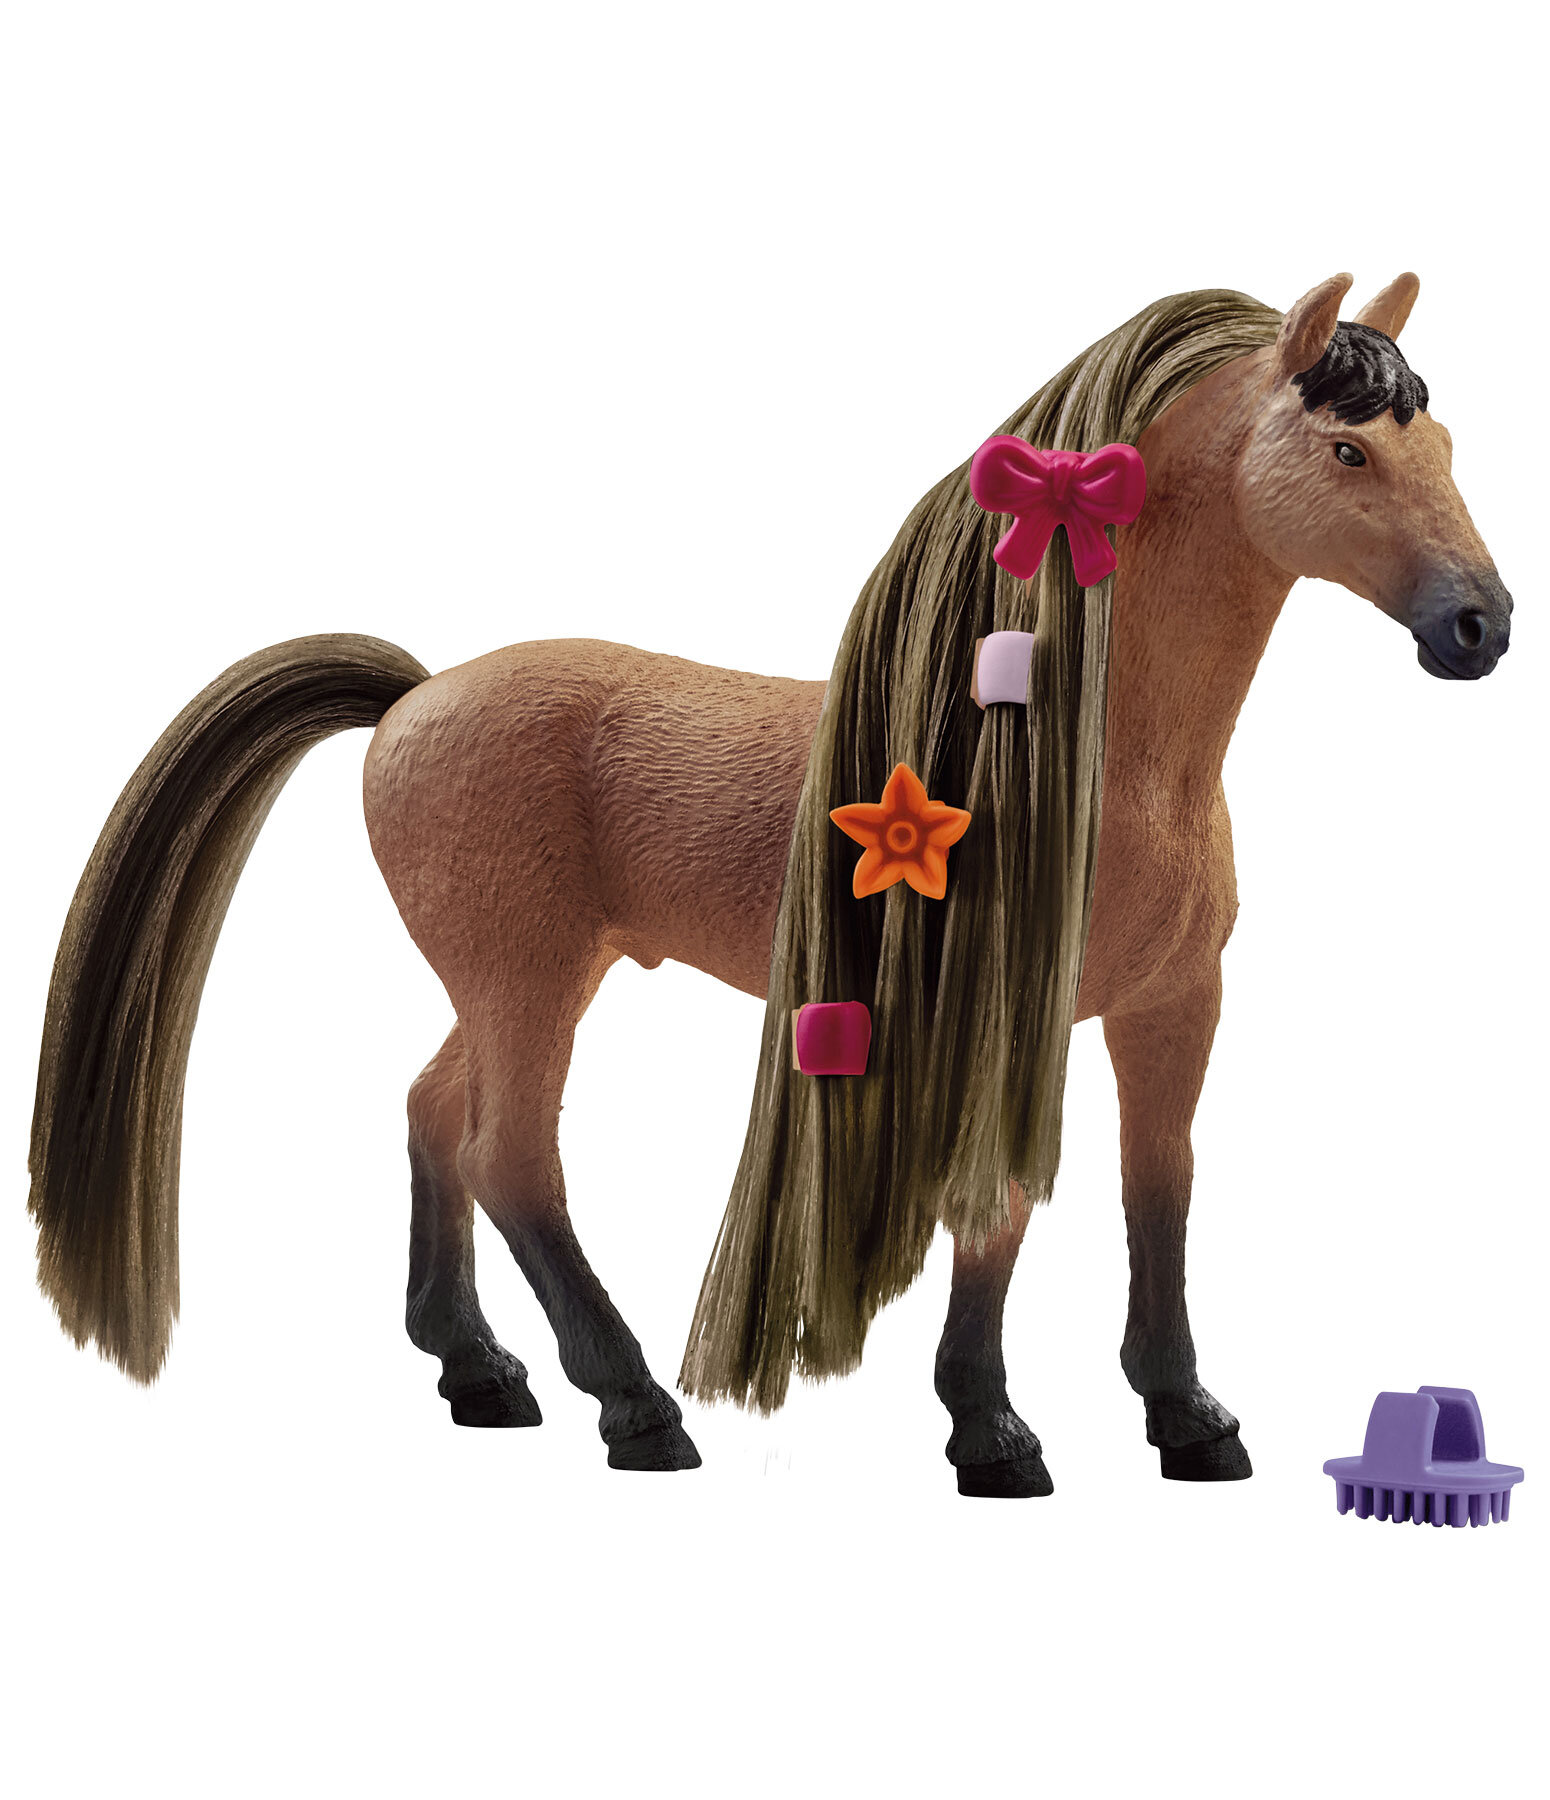 Beauty Horse Akhal-Teke Stallion